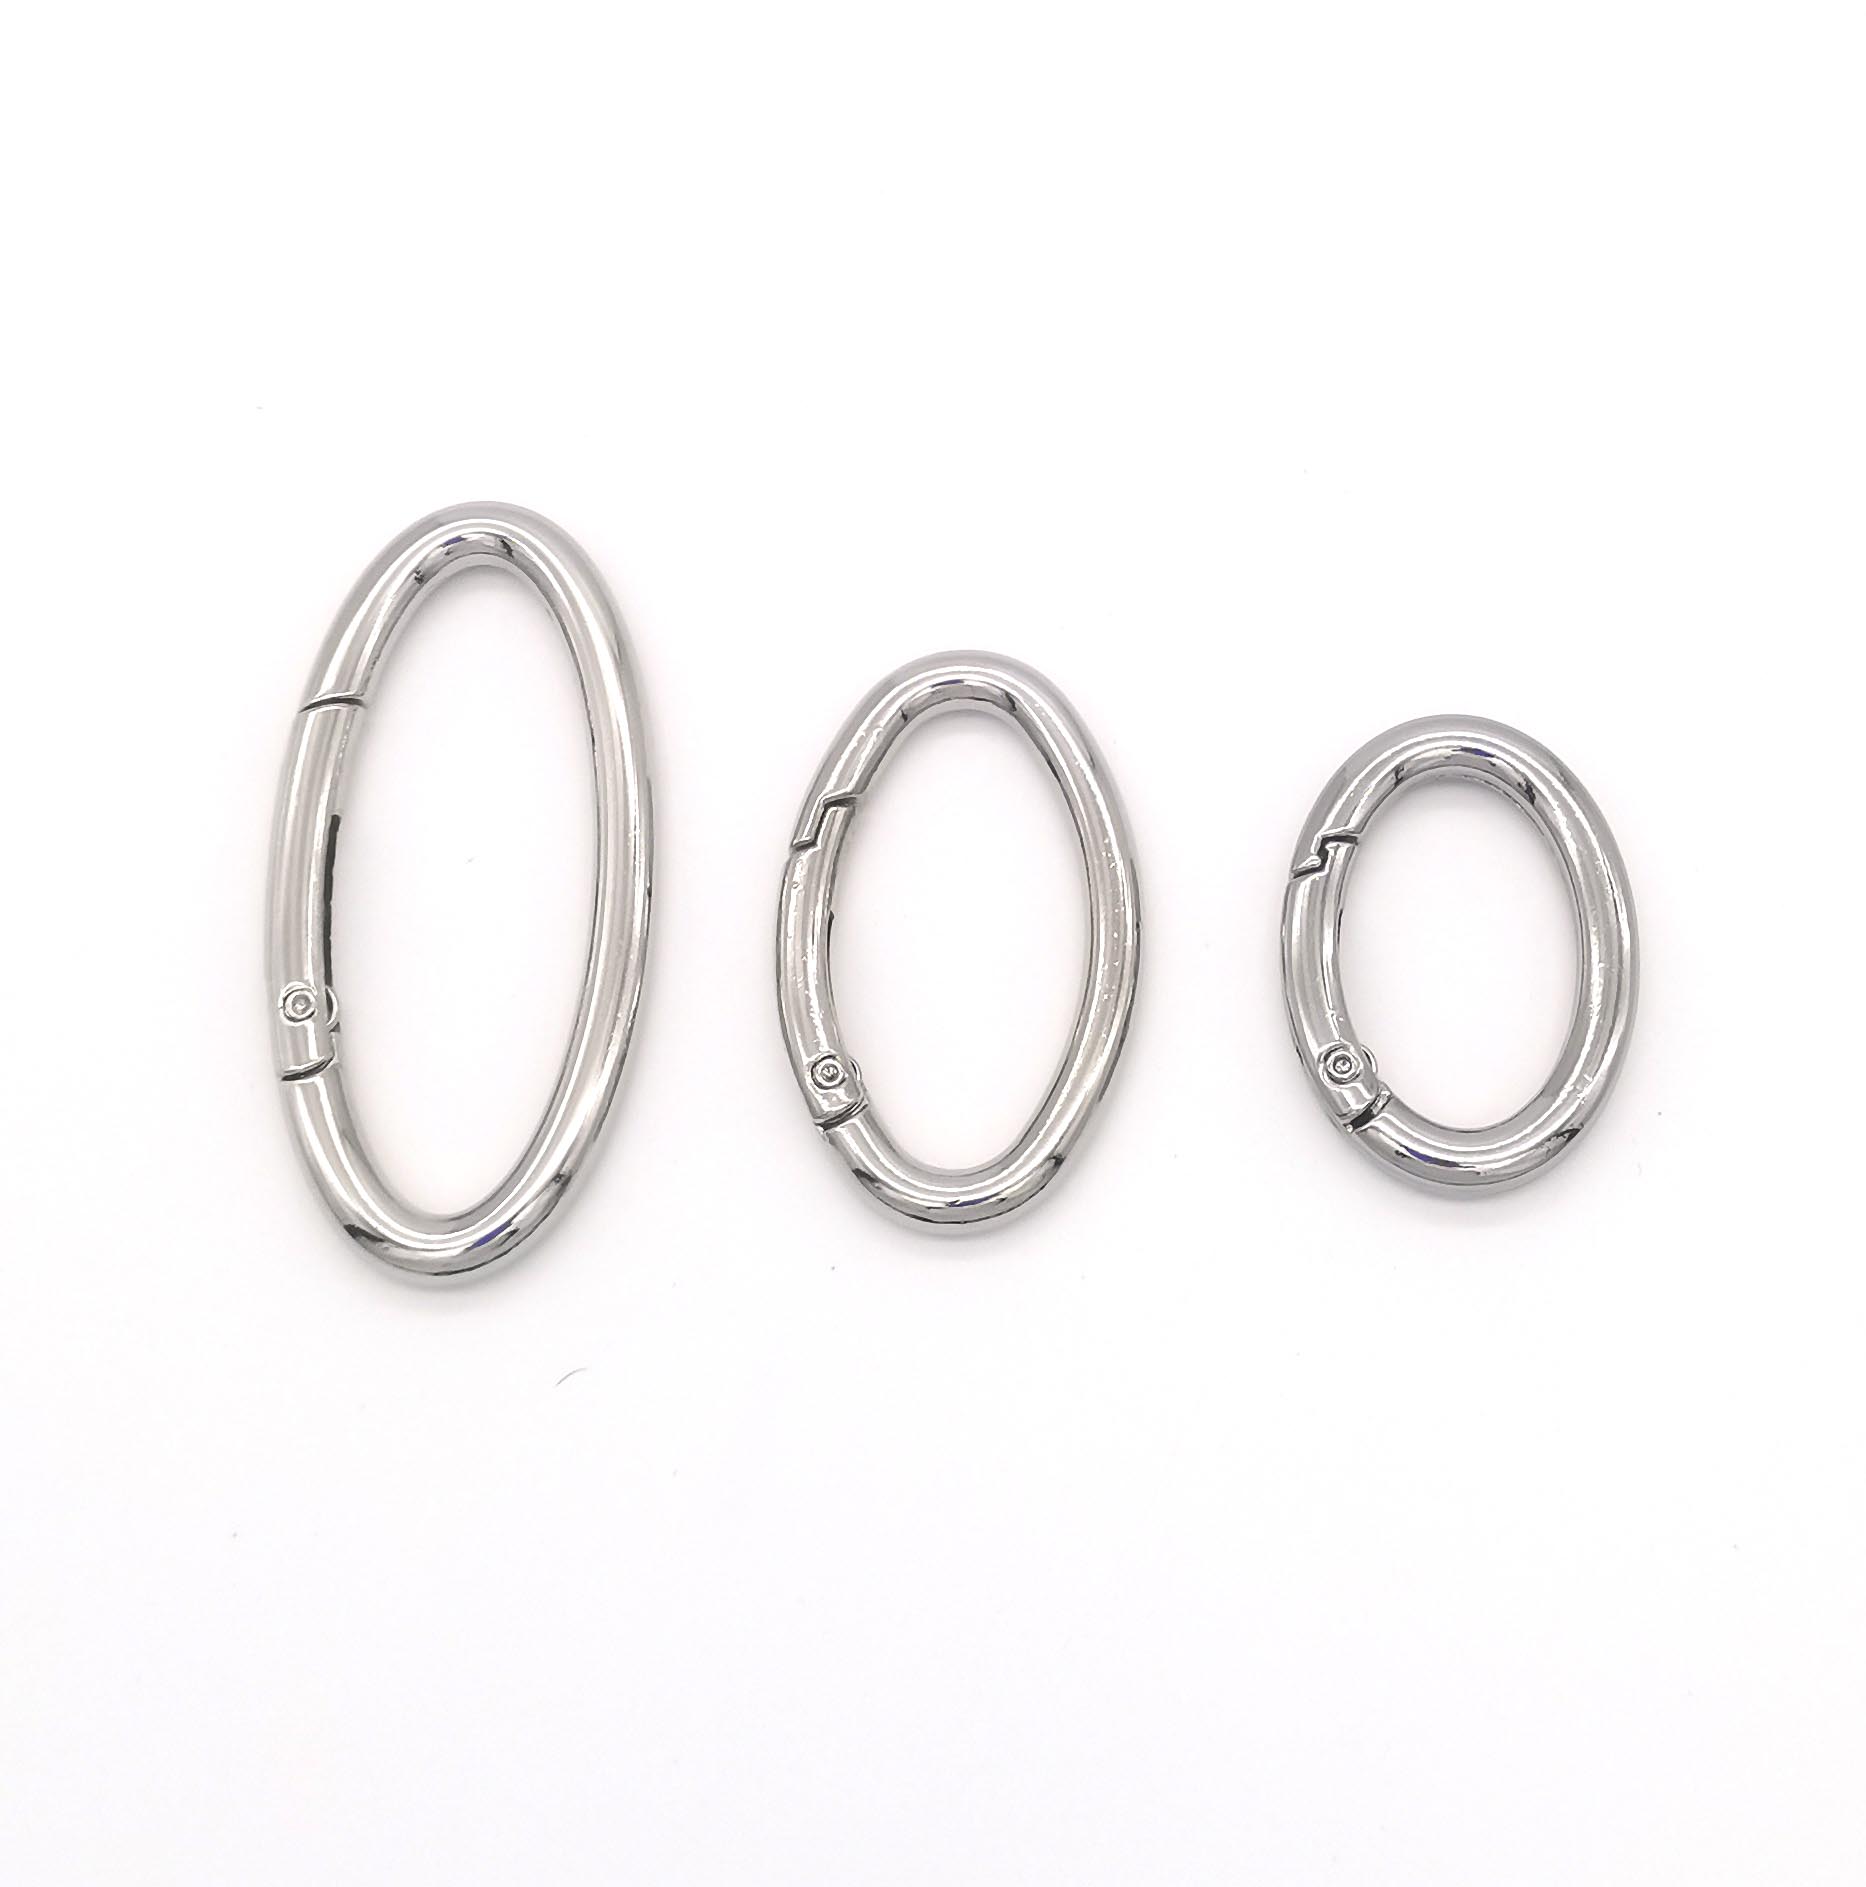 Metal O ring